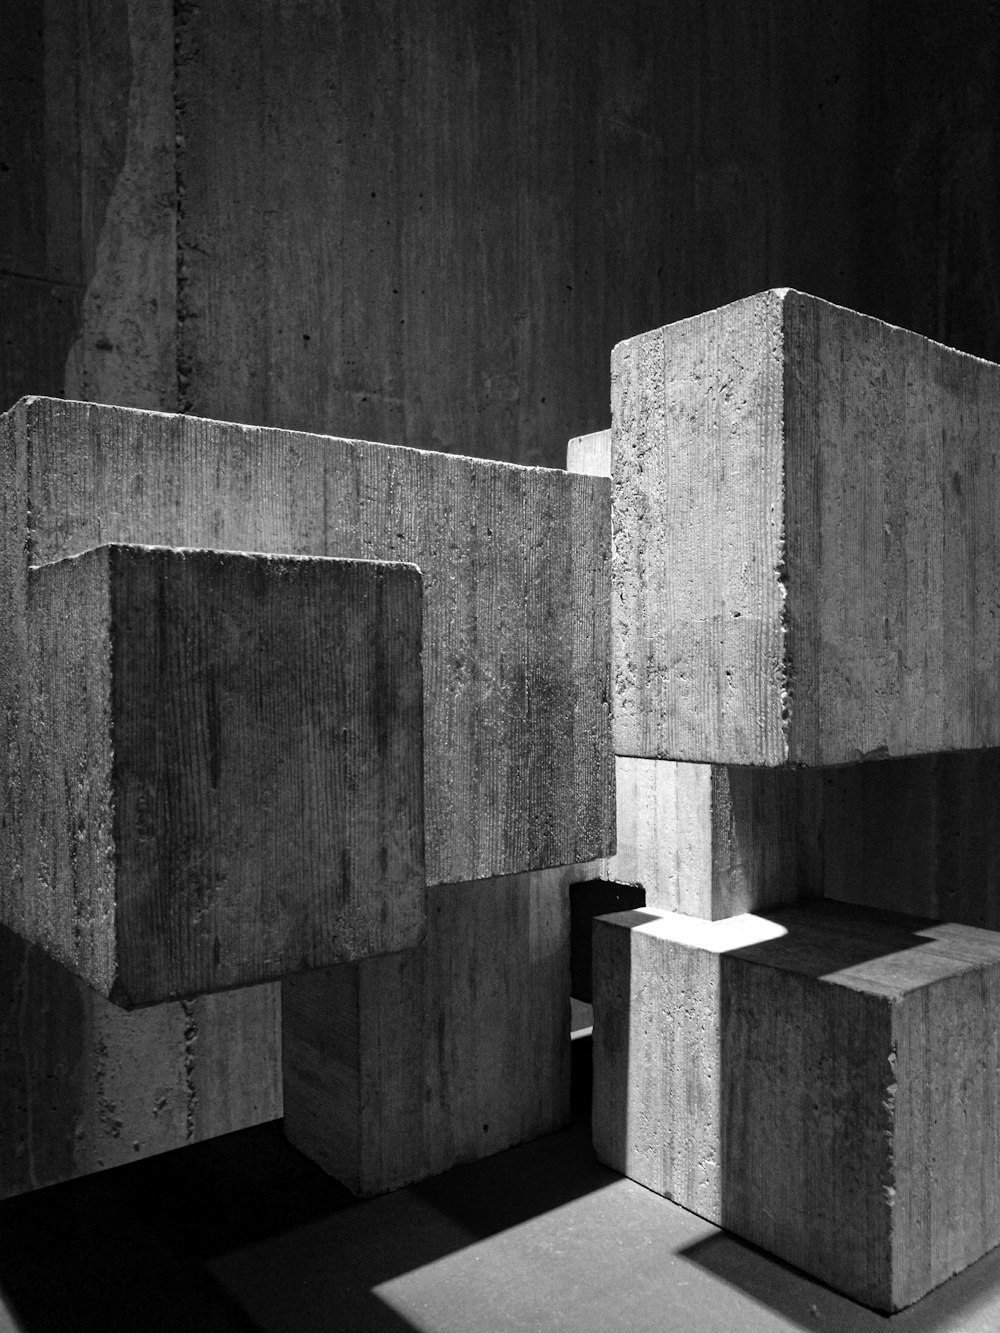 fotografia in scala di grigi di blocchi di cemento